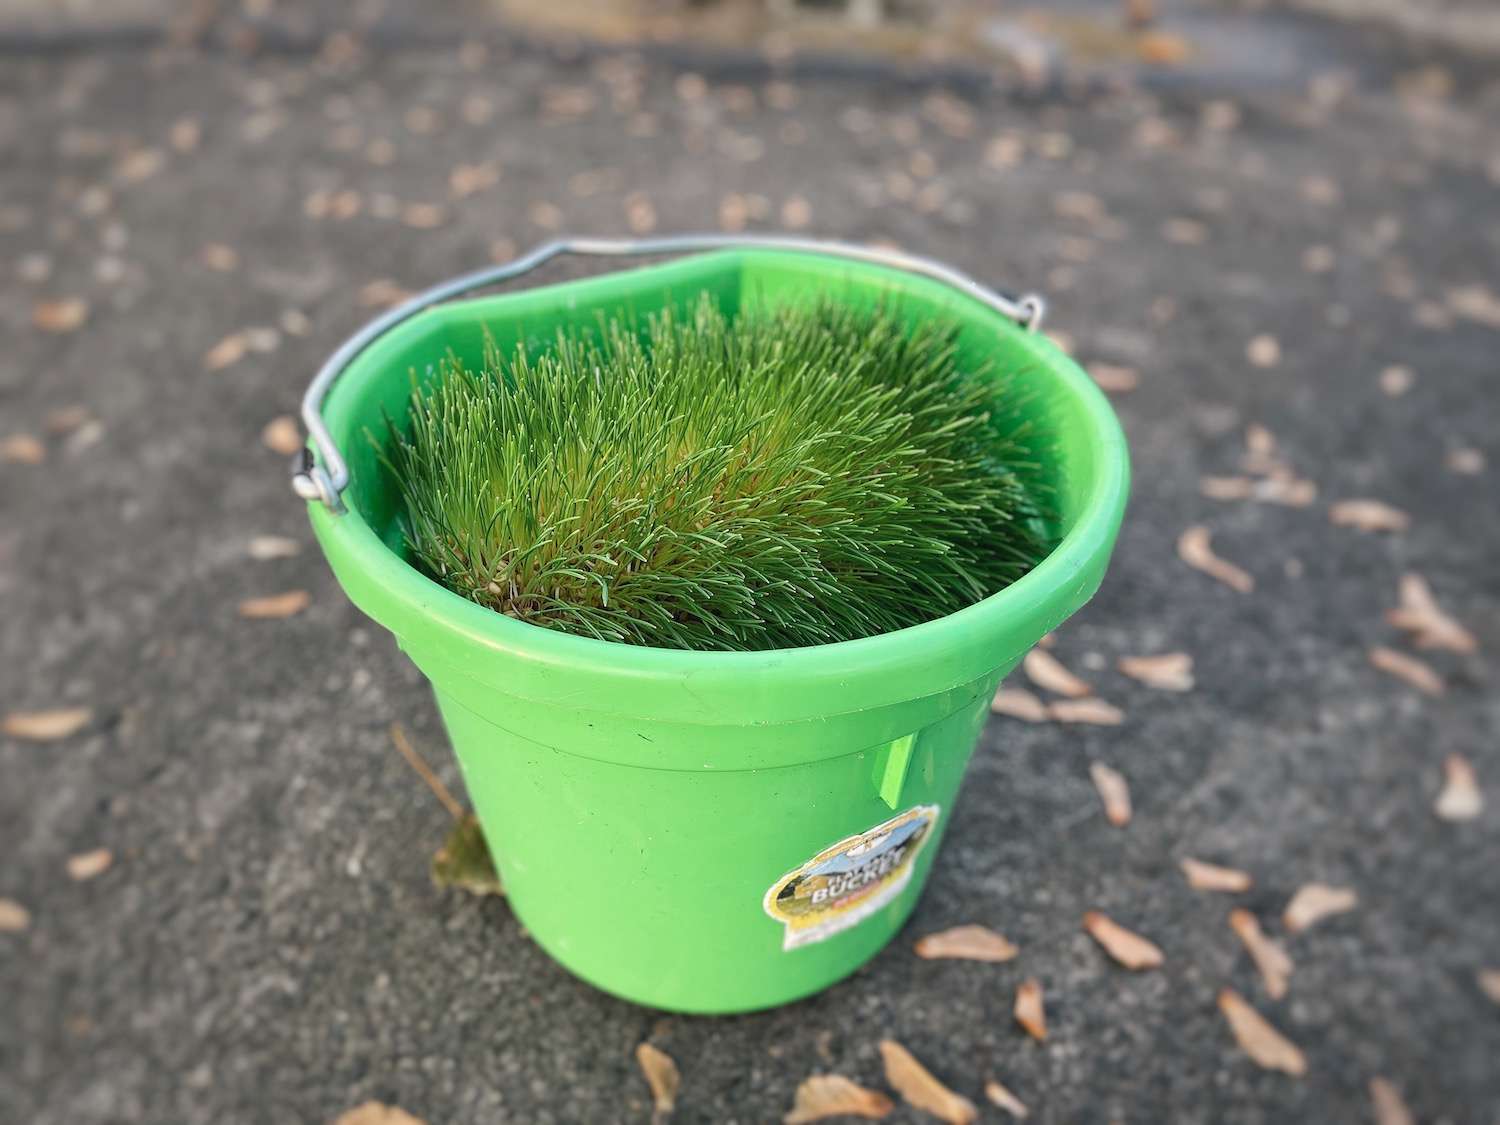 A photo of a green bucket holding an entire mat of chicken fodder